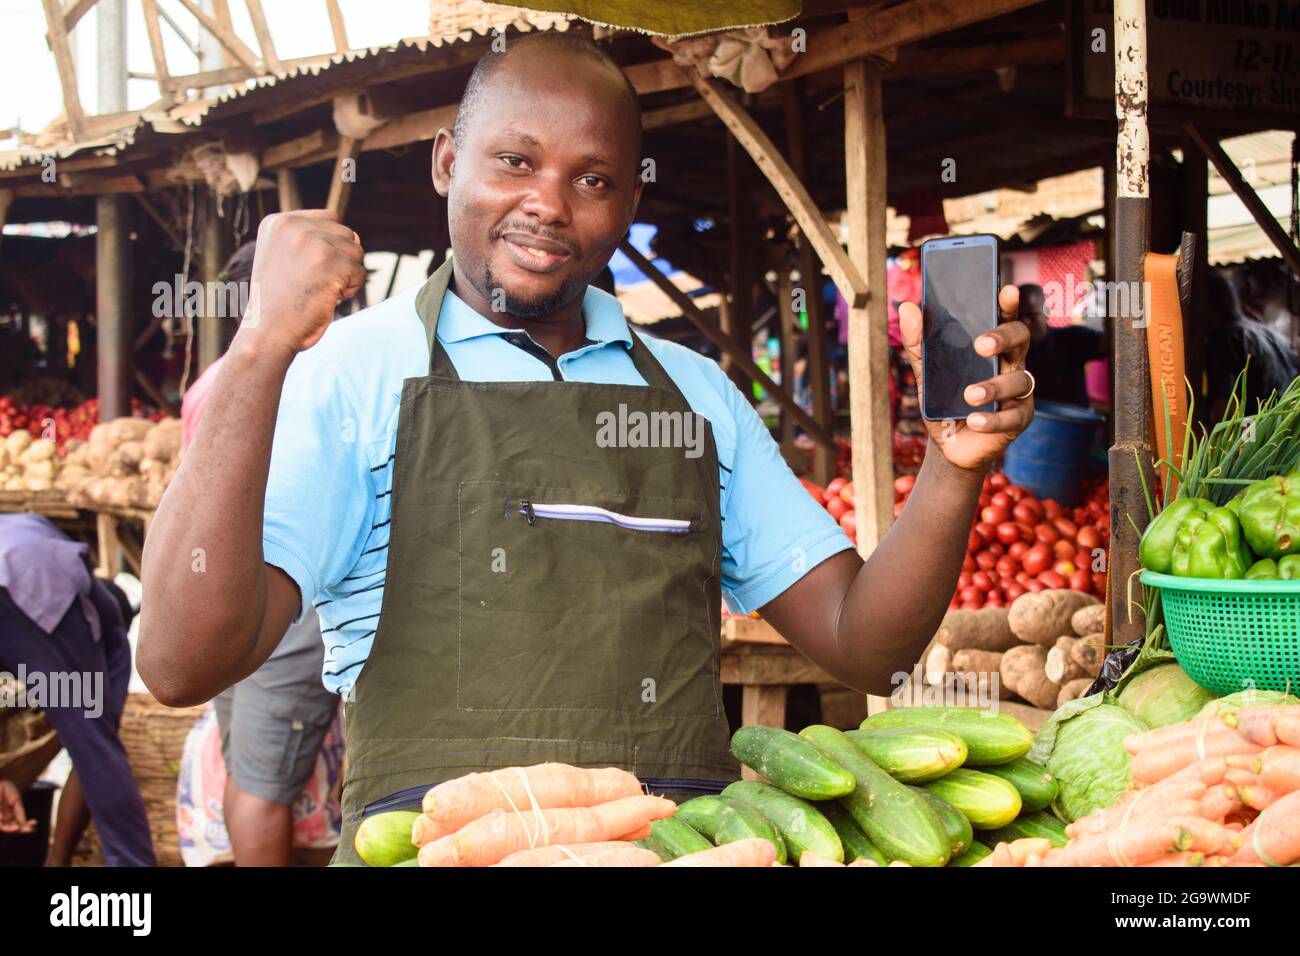 Stock Foto von einem glücklichen männlichen afrikanischen Lebensmittelverkäufer mit Schürze und Smartphone, bereit, an Kunden zu verkaufen Stockfoto